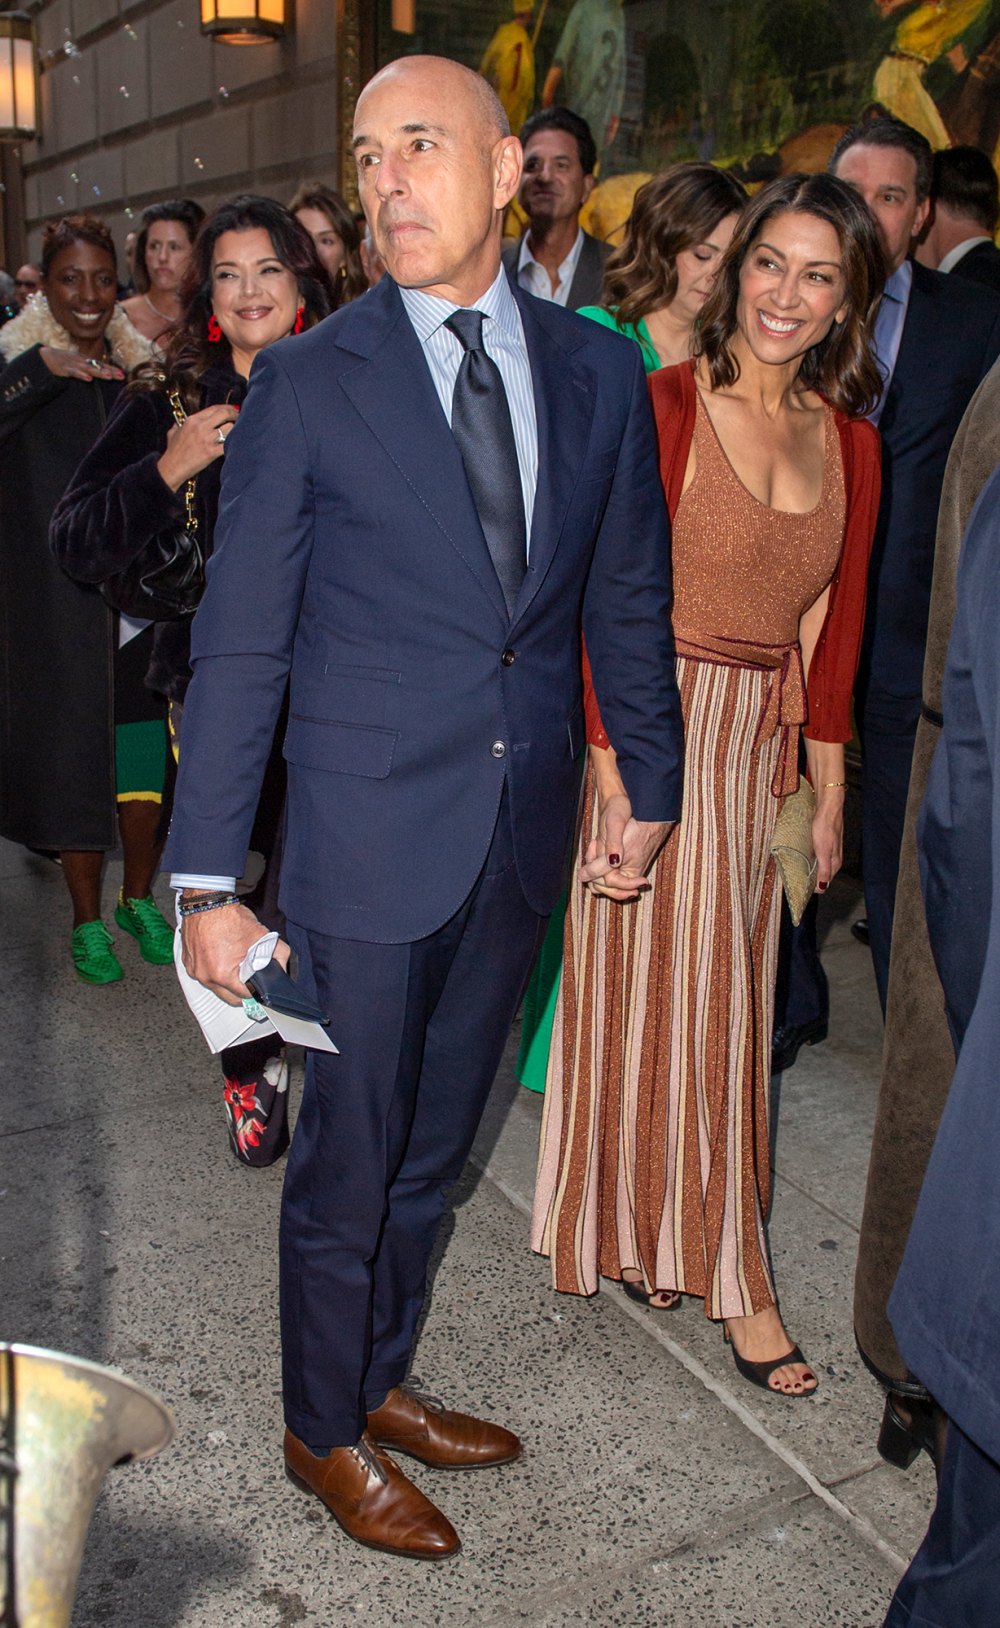 Matt Lauer and Girlfriend Hold Hands at Don Lemon's Wedding